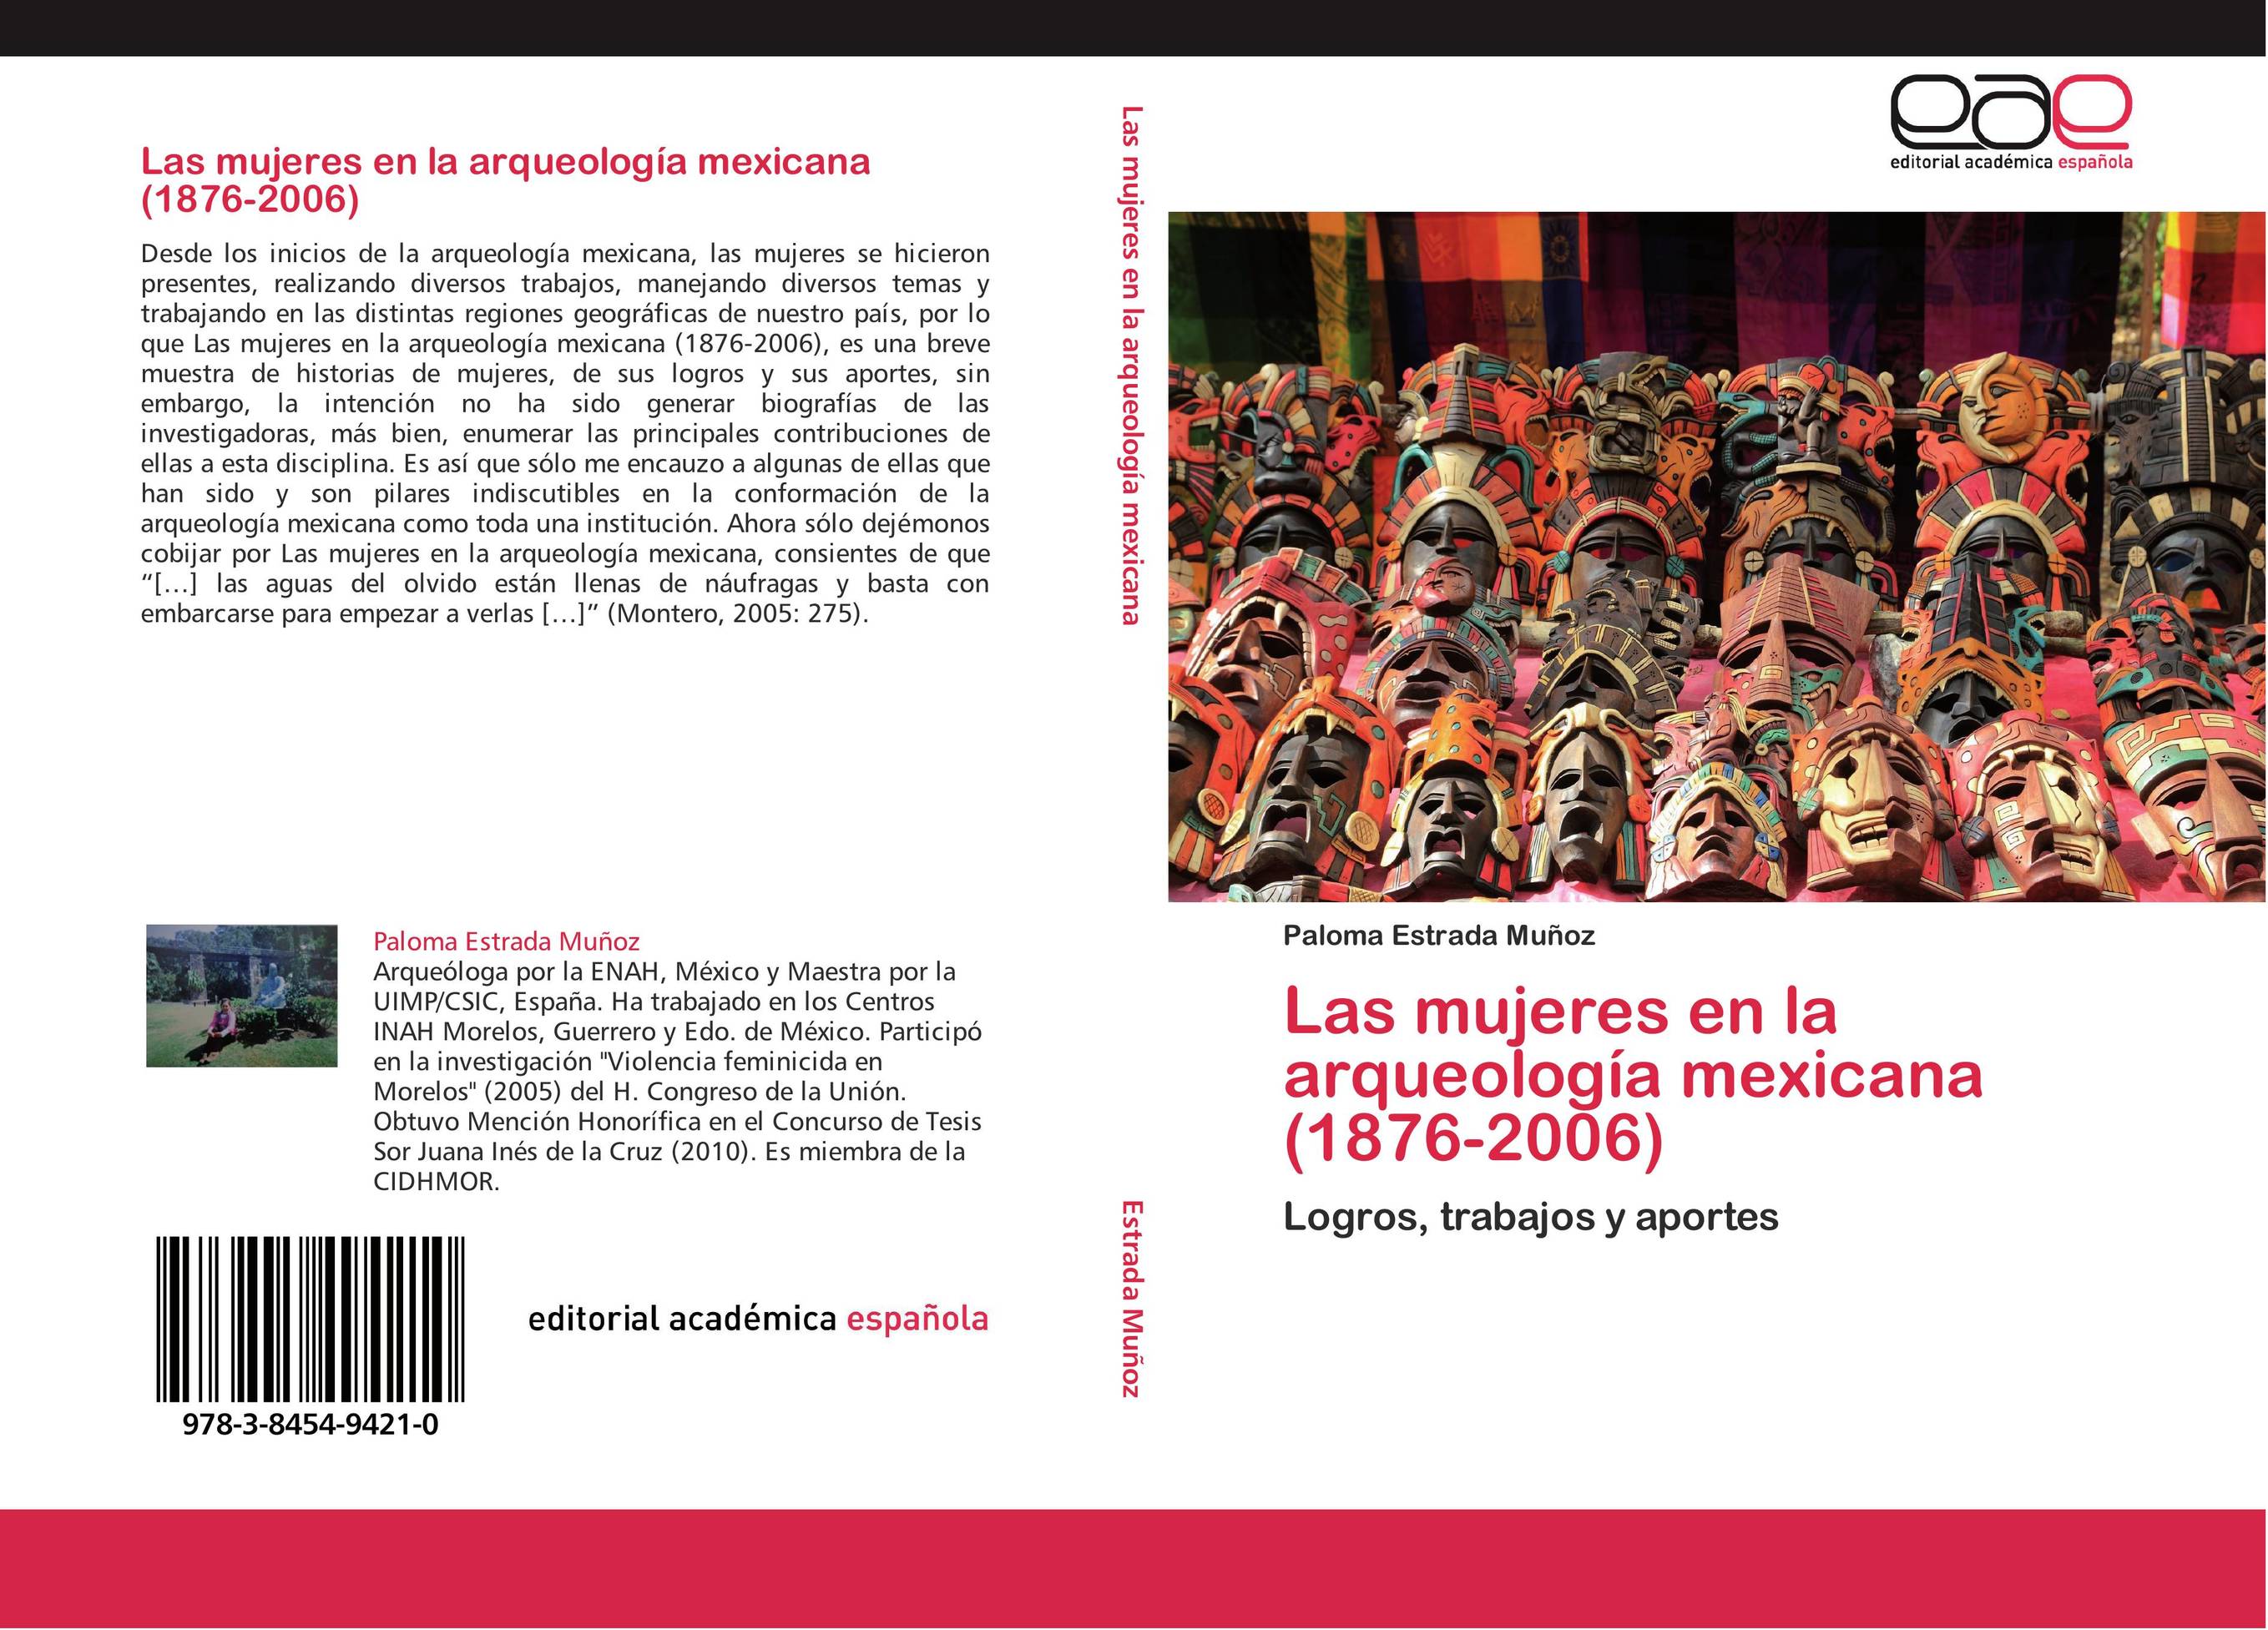 Las mujeres en la arqueología mexicana (1876-2006)